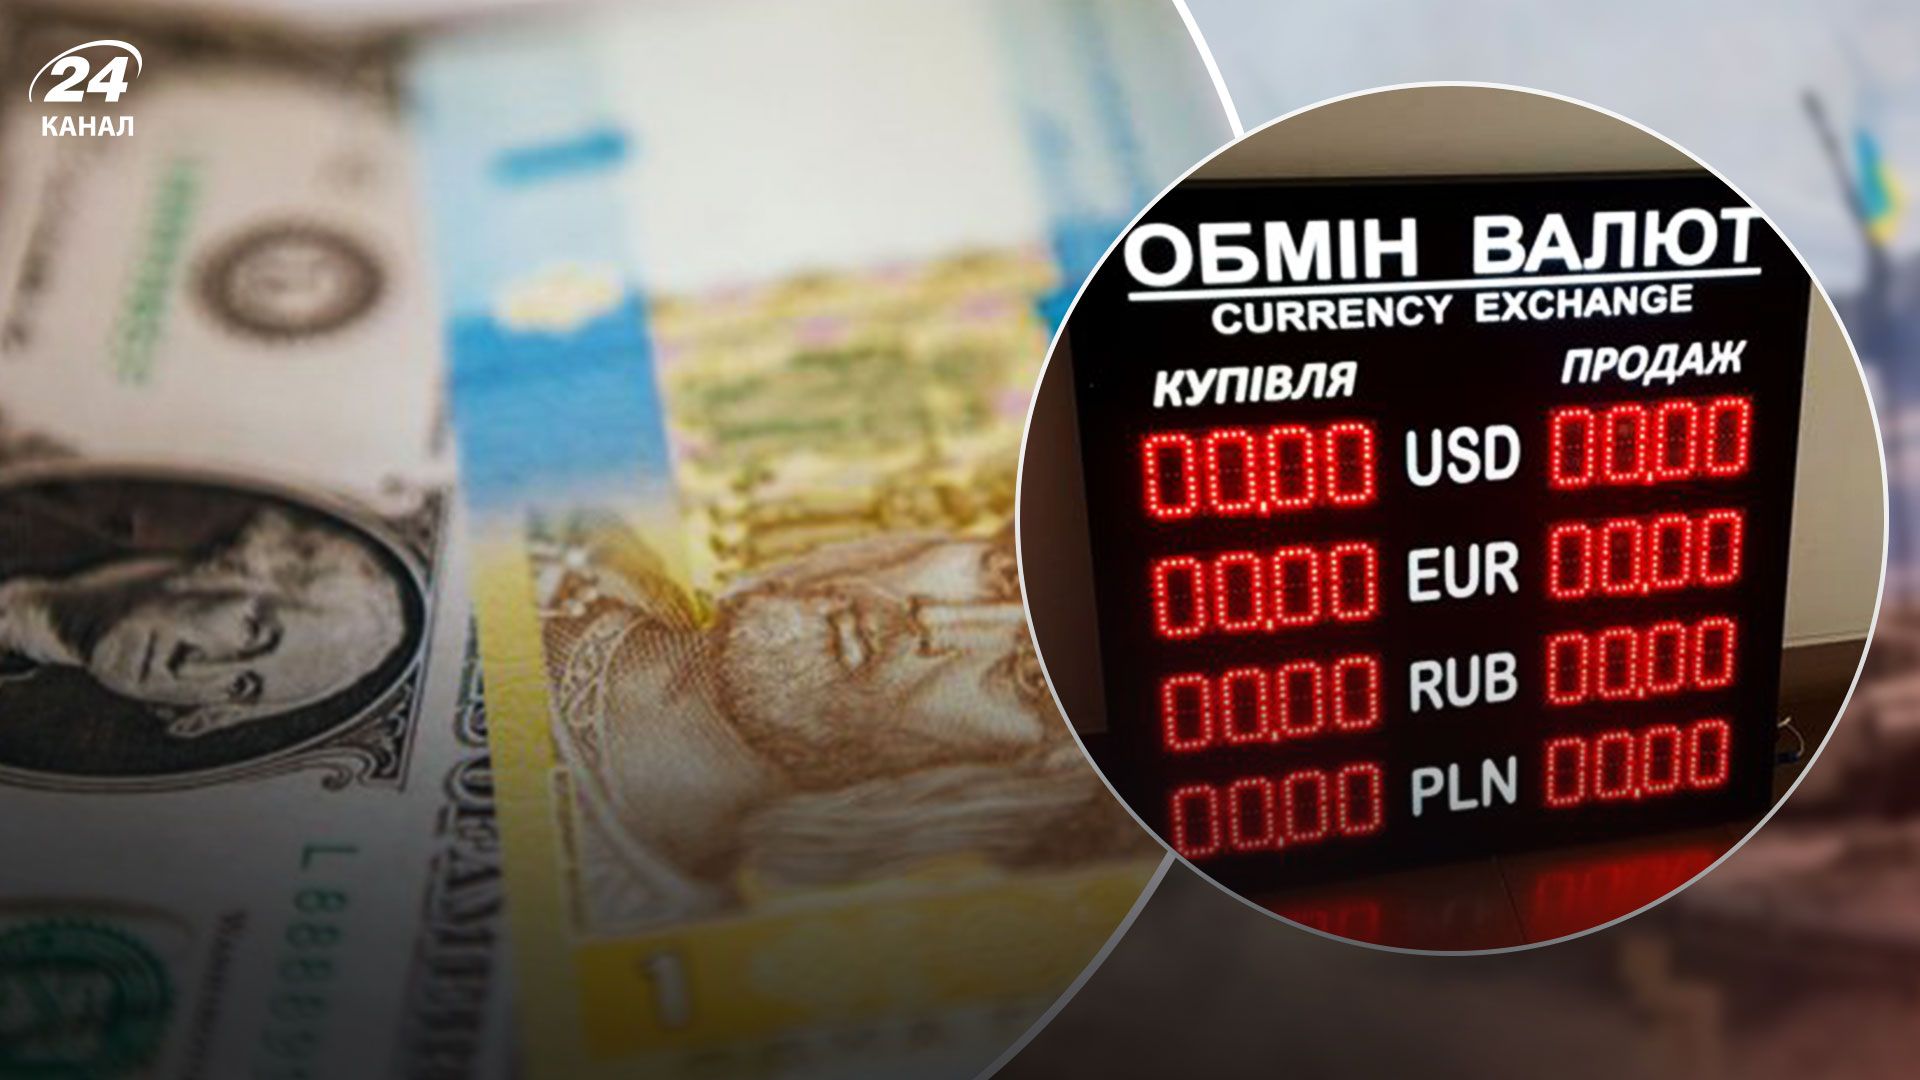 Стоимость доллара в обменниках – какая цена евро – где выгодно покупать валюту